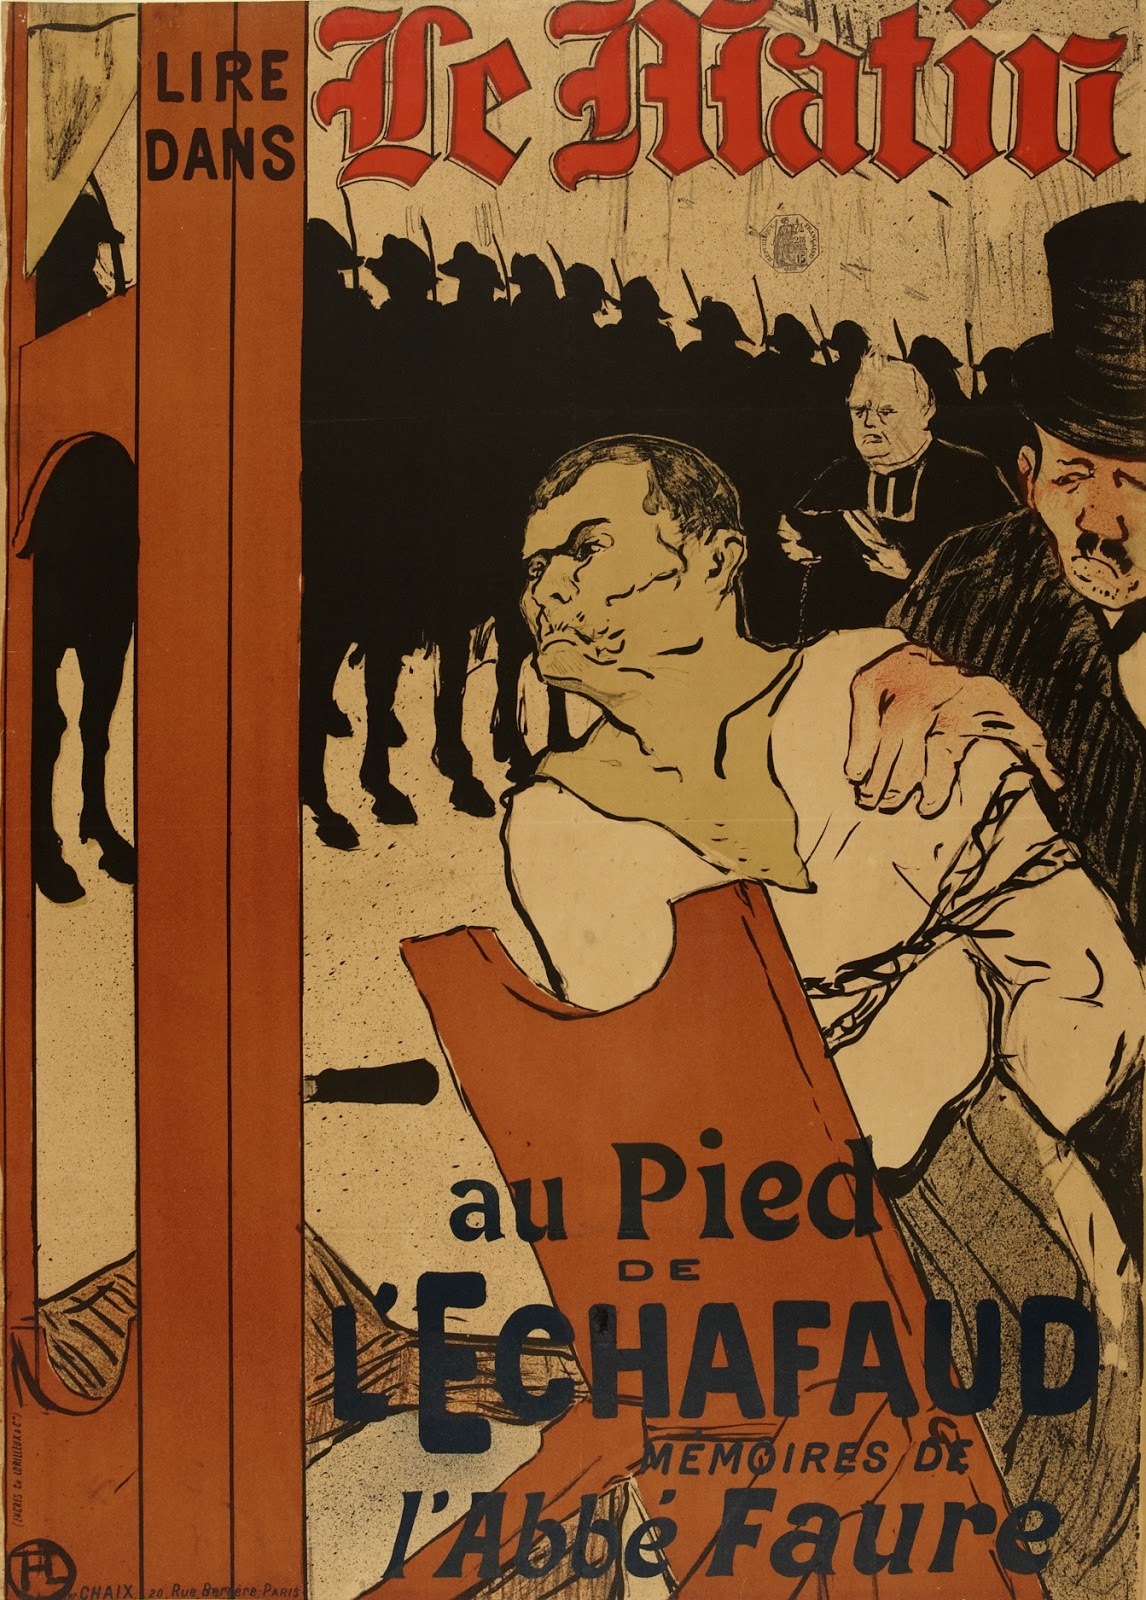 Henri+de+Toulouse+Lautrec-1864-1901 (21).jpg